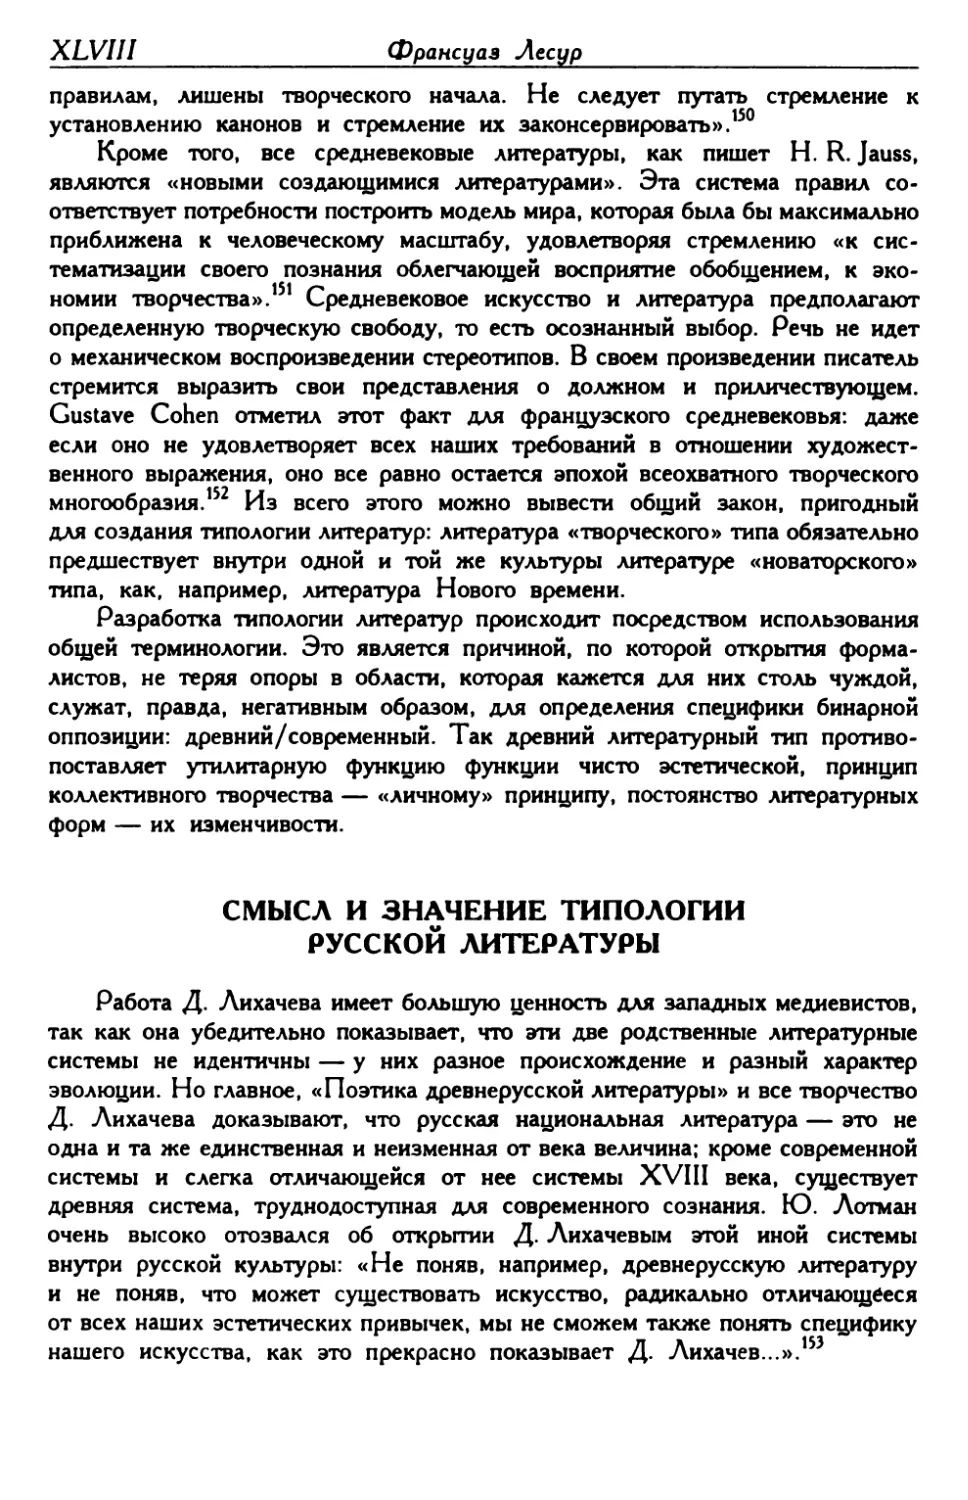 Смысл и значение типологии русской литературы